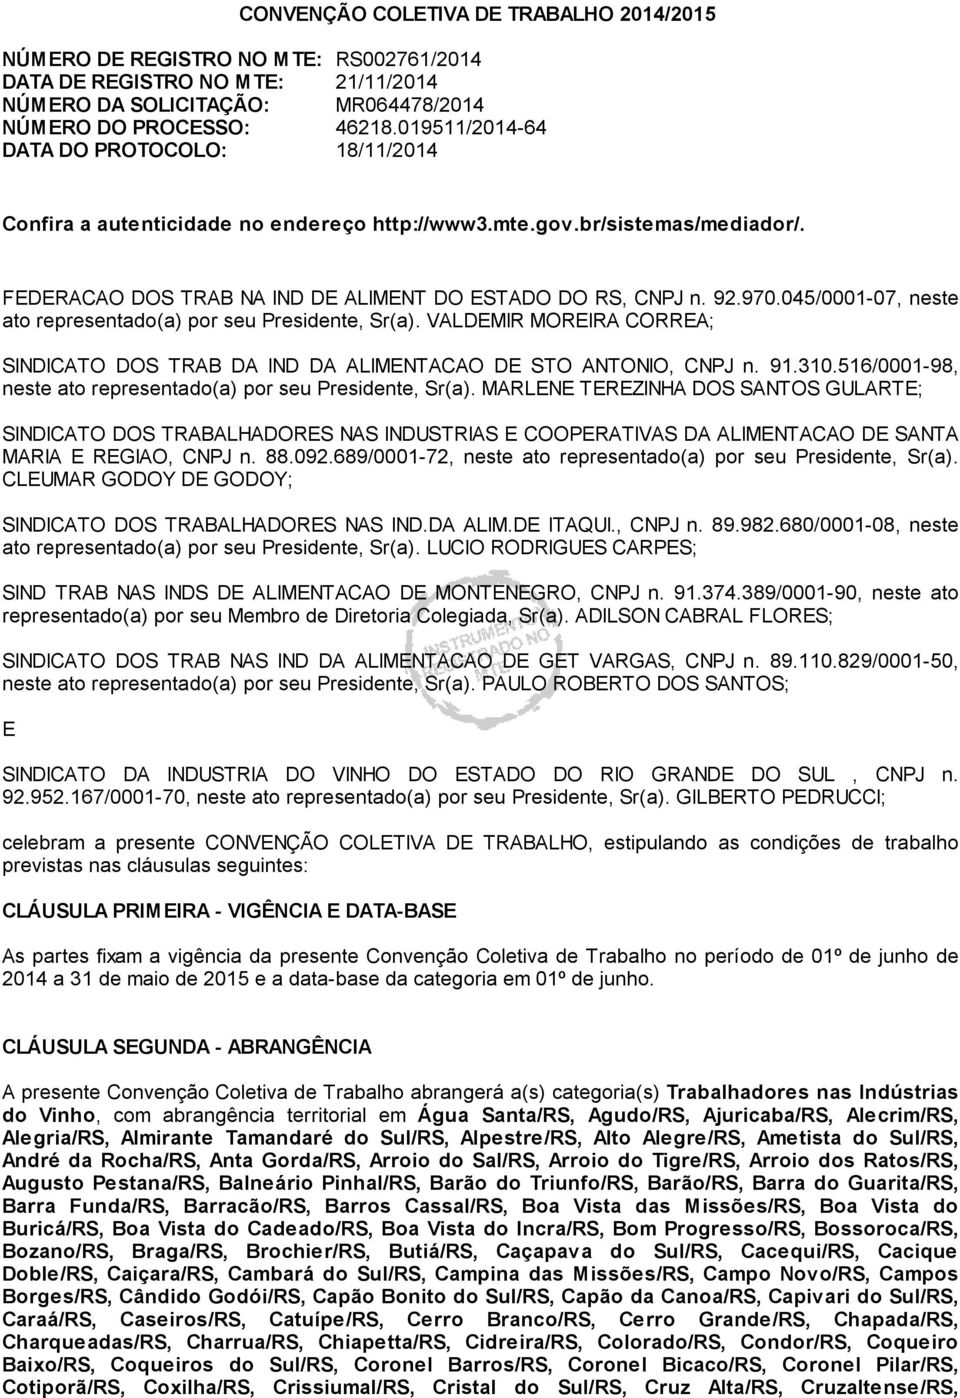 045/0001-07, neste ato representado(a) por seu Presidente, Sr(a). VALDEMIR MOREIRA CORREA; SINDICATO DOS TRAB DA IND DA ALIMENTACAO DE STO ANTONIO, CNPJ n. 91.310.